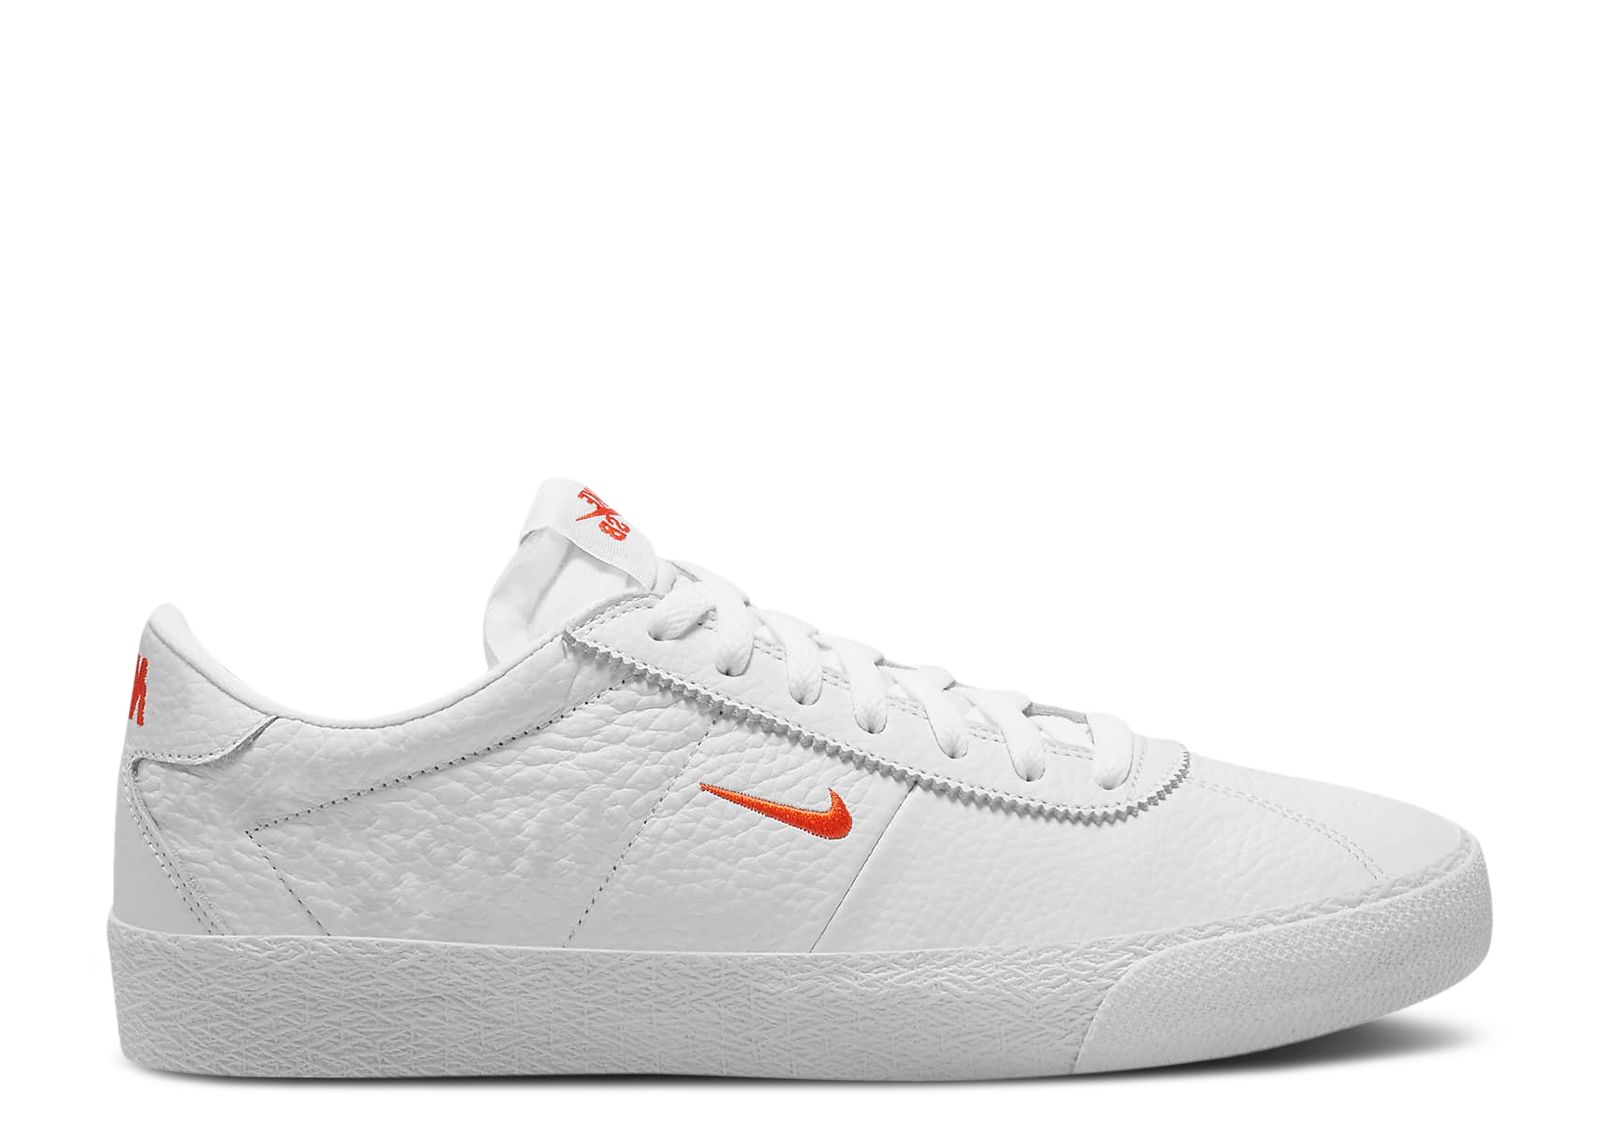 Zoom Bruin SB 'White Team Orange' - Nike - AQ7941 101 - white